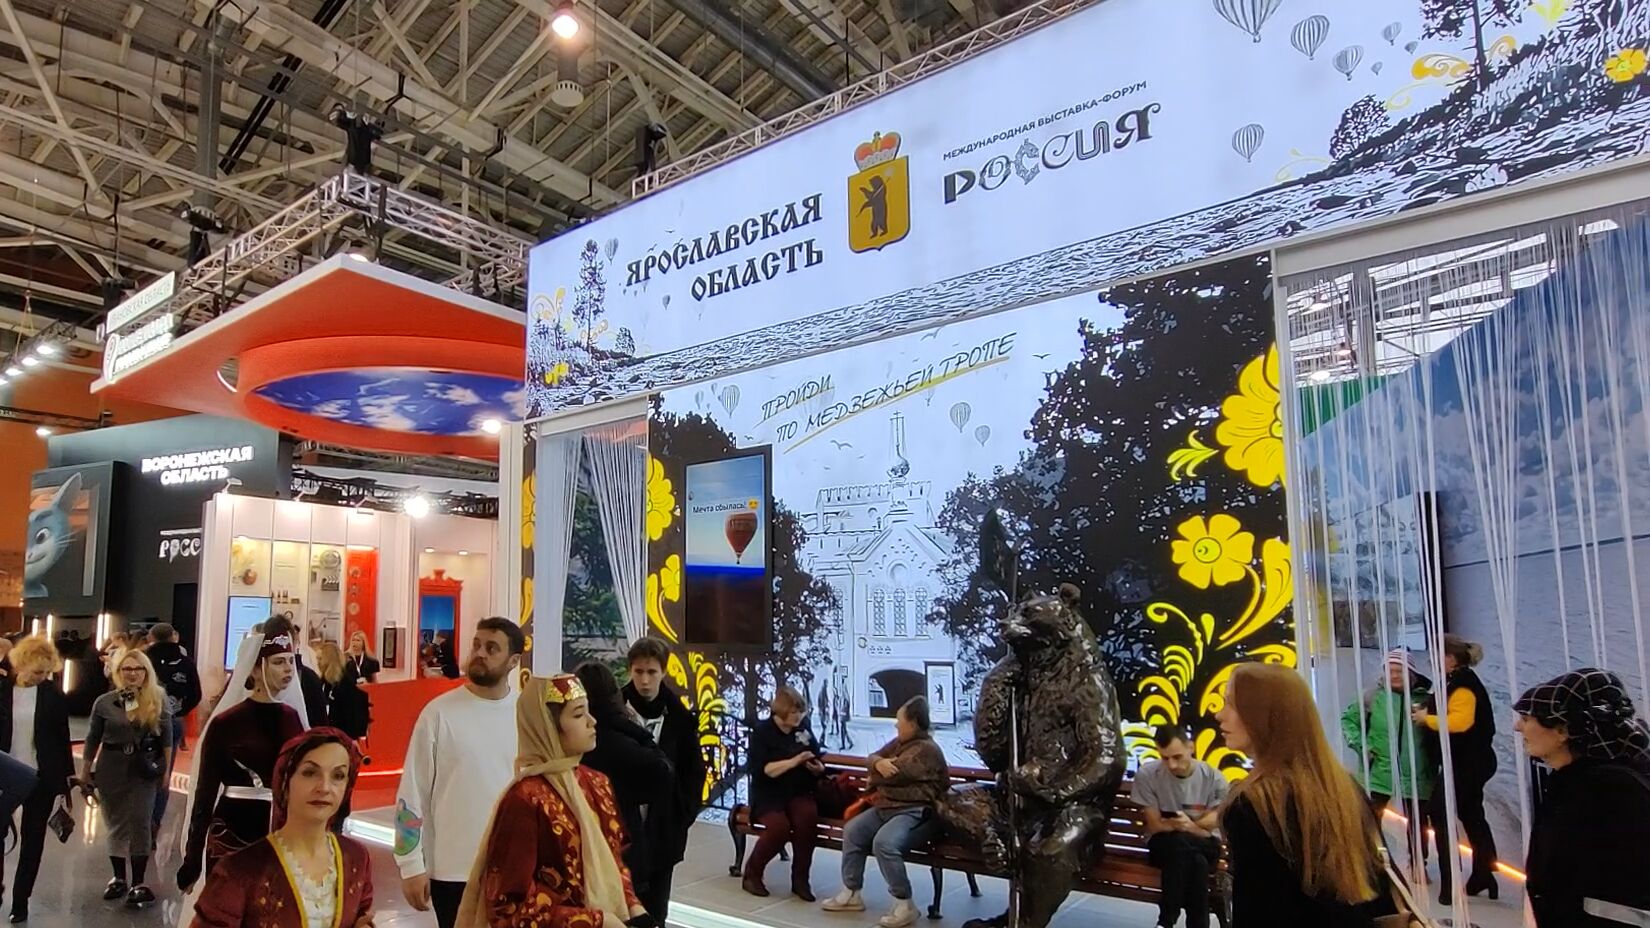 Ярославская область открыла экспозицию на международной выставке-форуме «Россия»